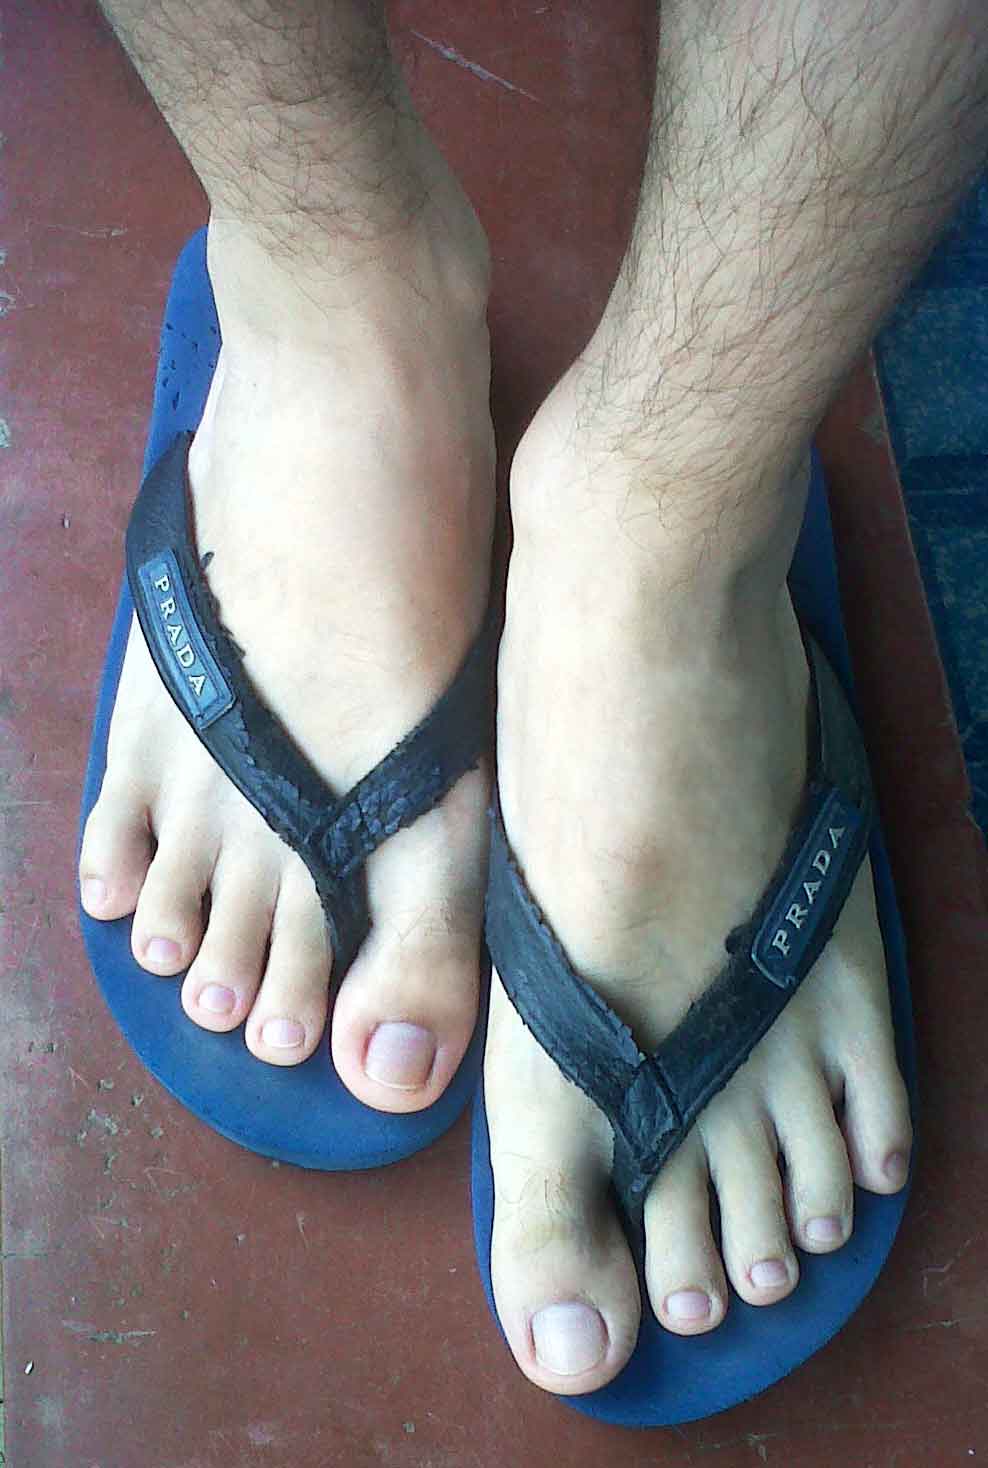 Why men have foot fetish